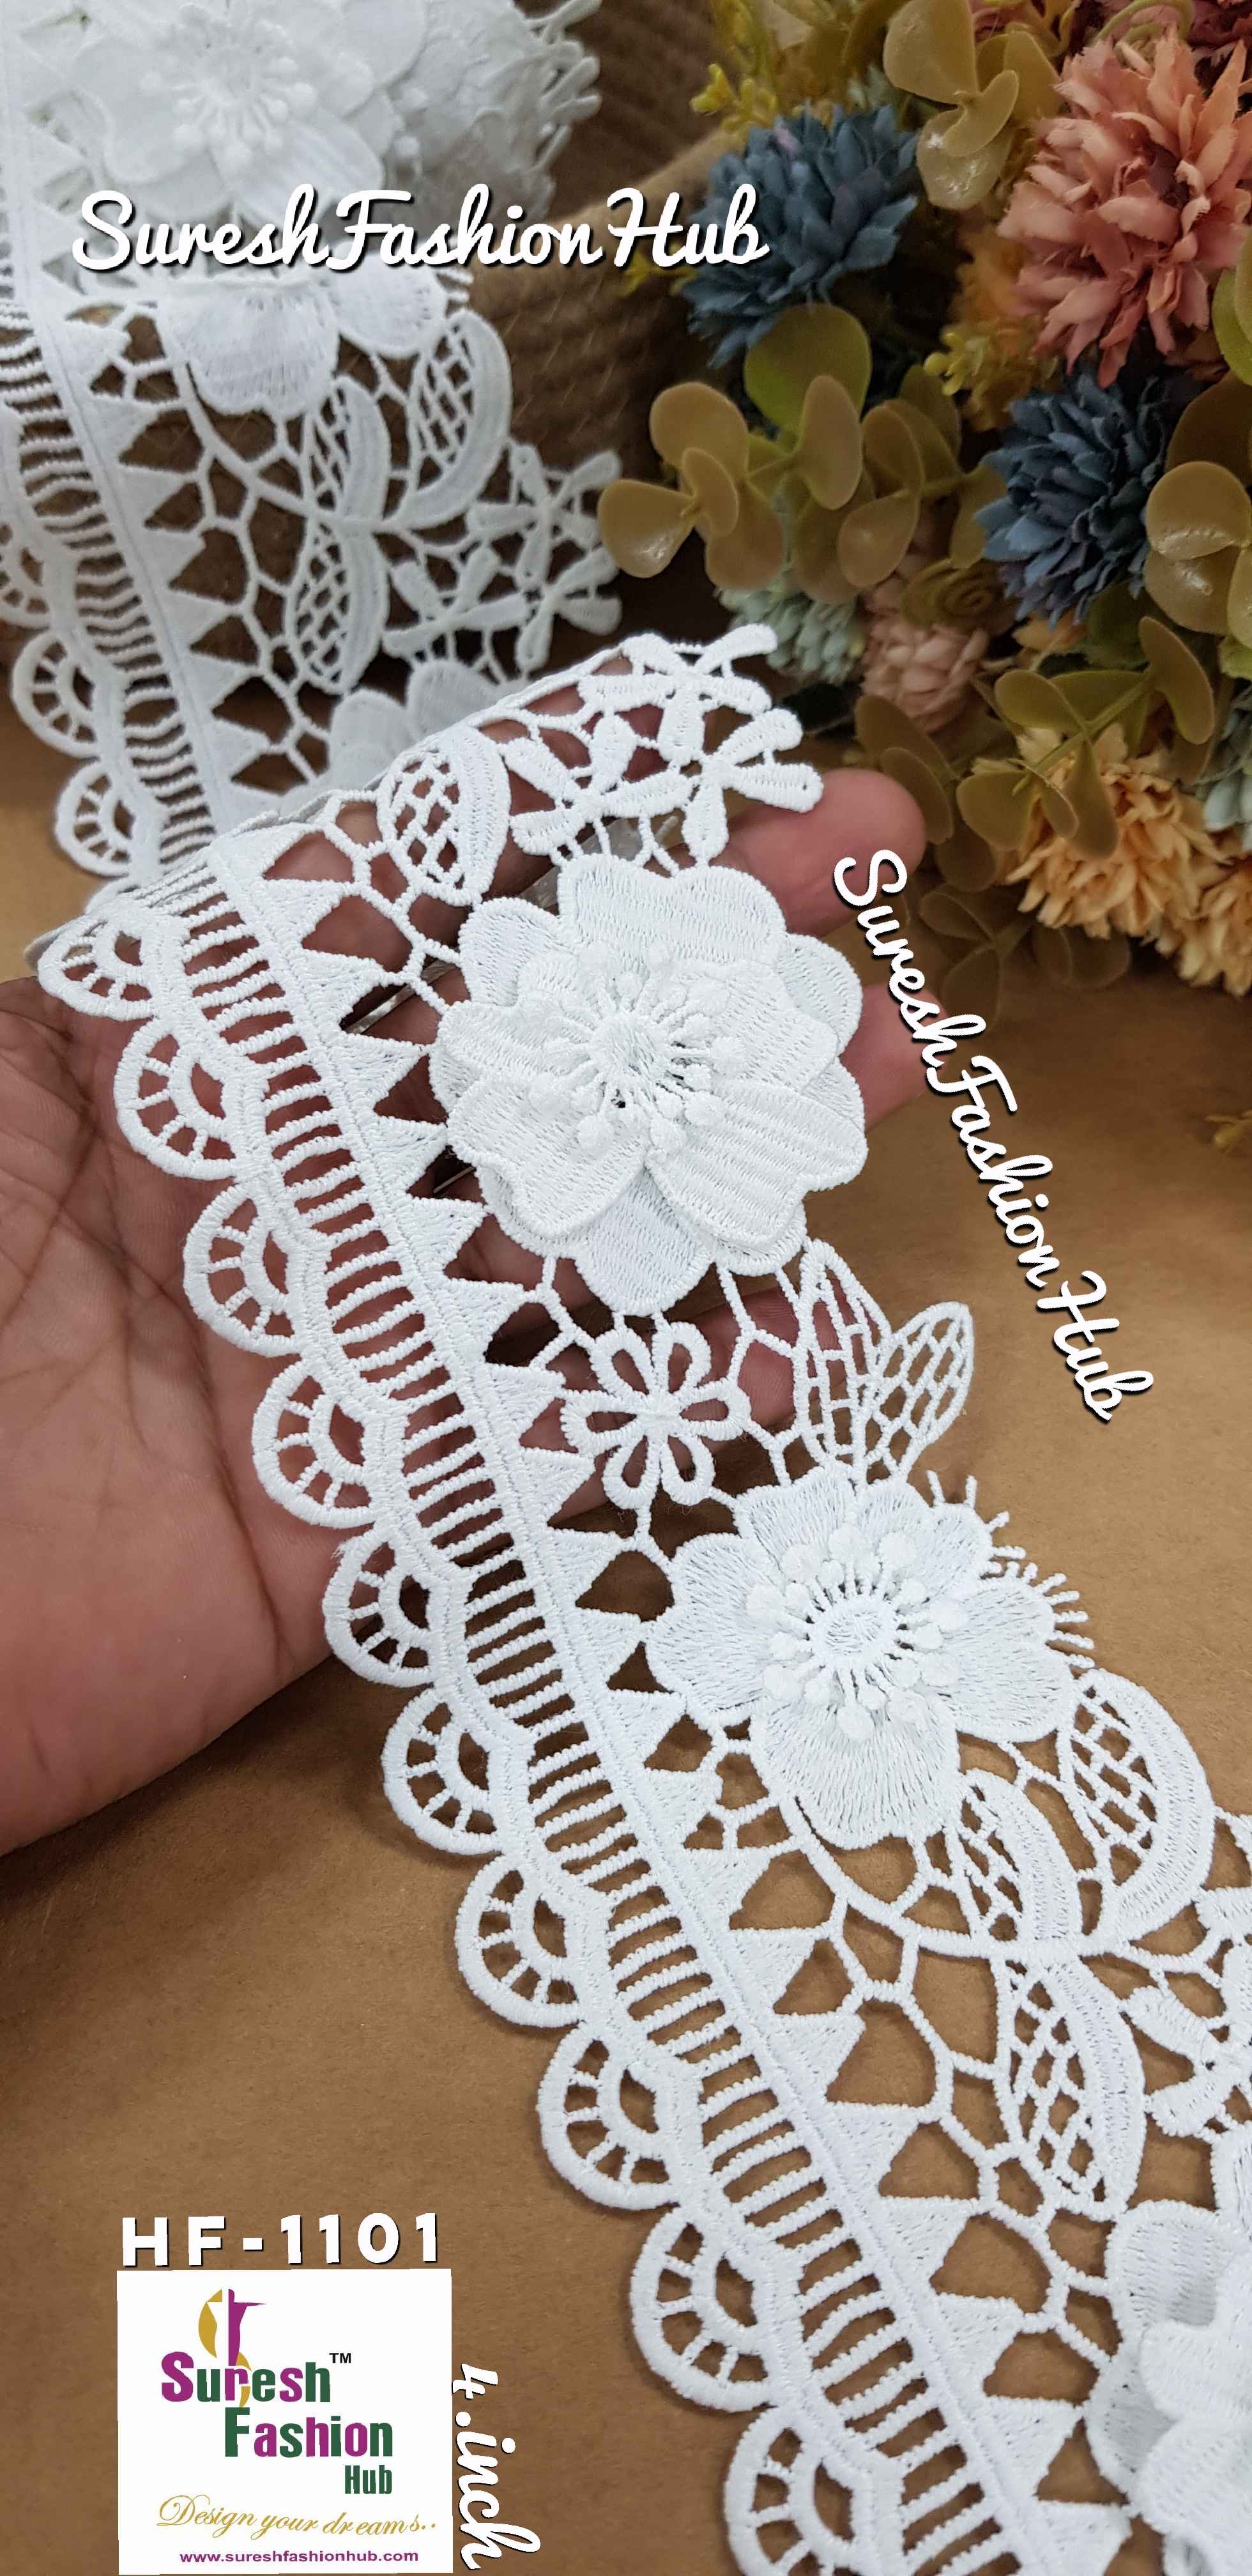 Dyeable Cotton Flower Lace Trim, 1 metre, 4inch